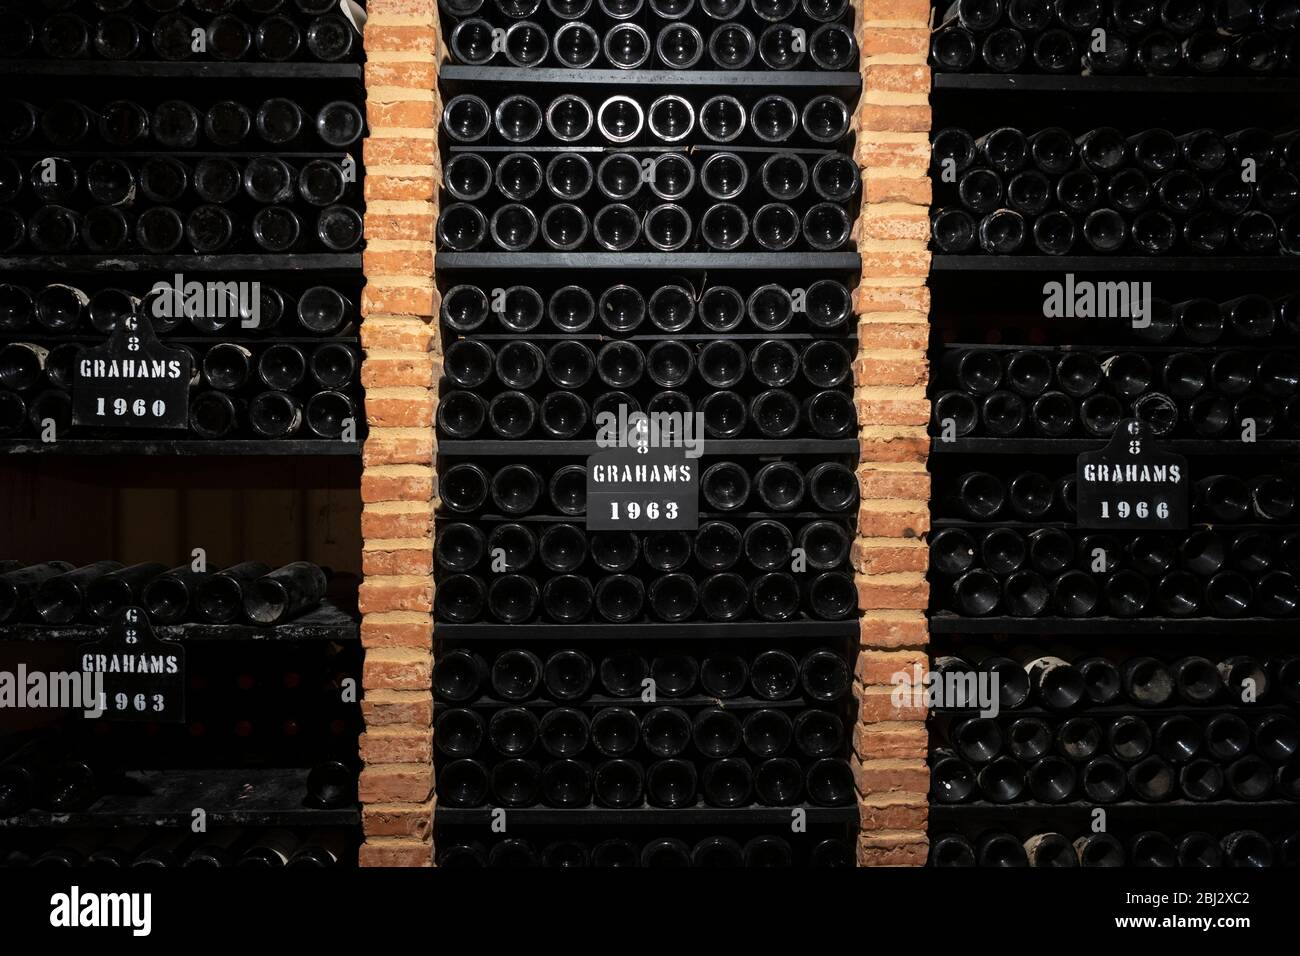 Bottles of vintage port 1960, 1963, 1966, in racks at wine cellars of Graham's Port Lodge in V|la Nova de Gaia in Porto, Portugal Stock Photo